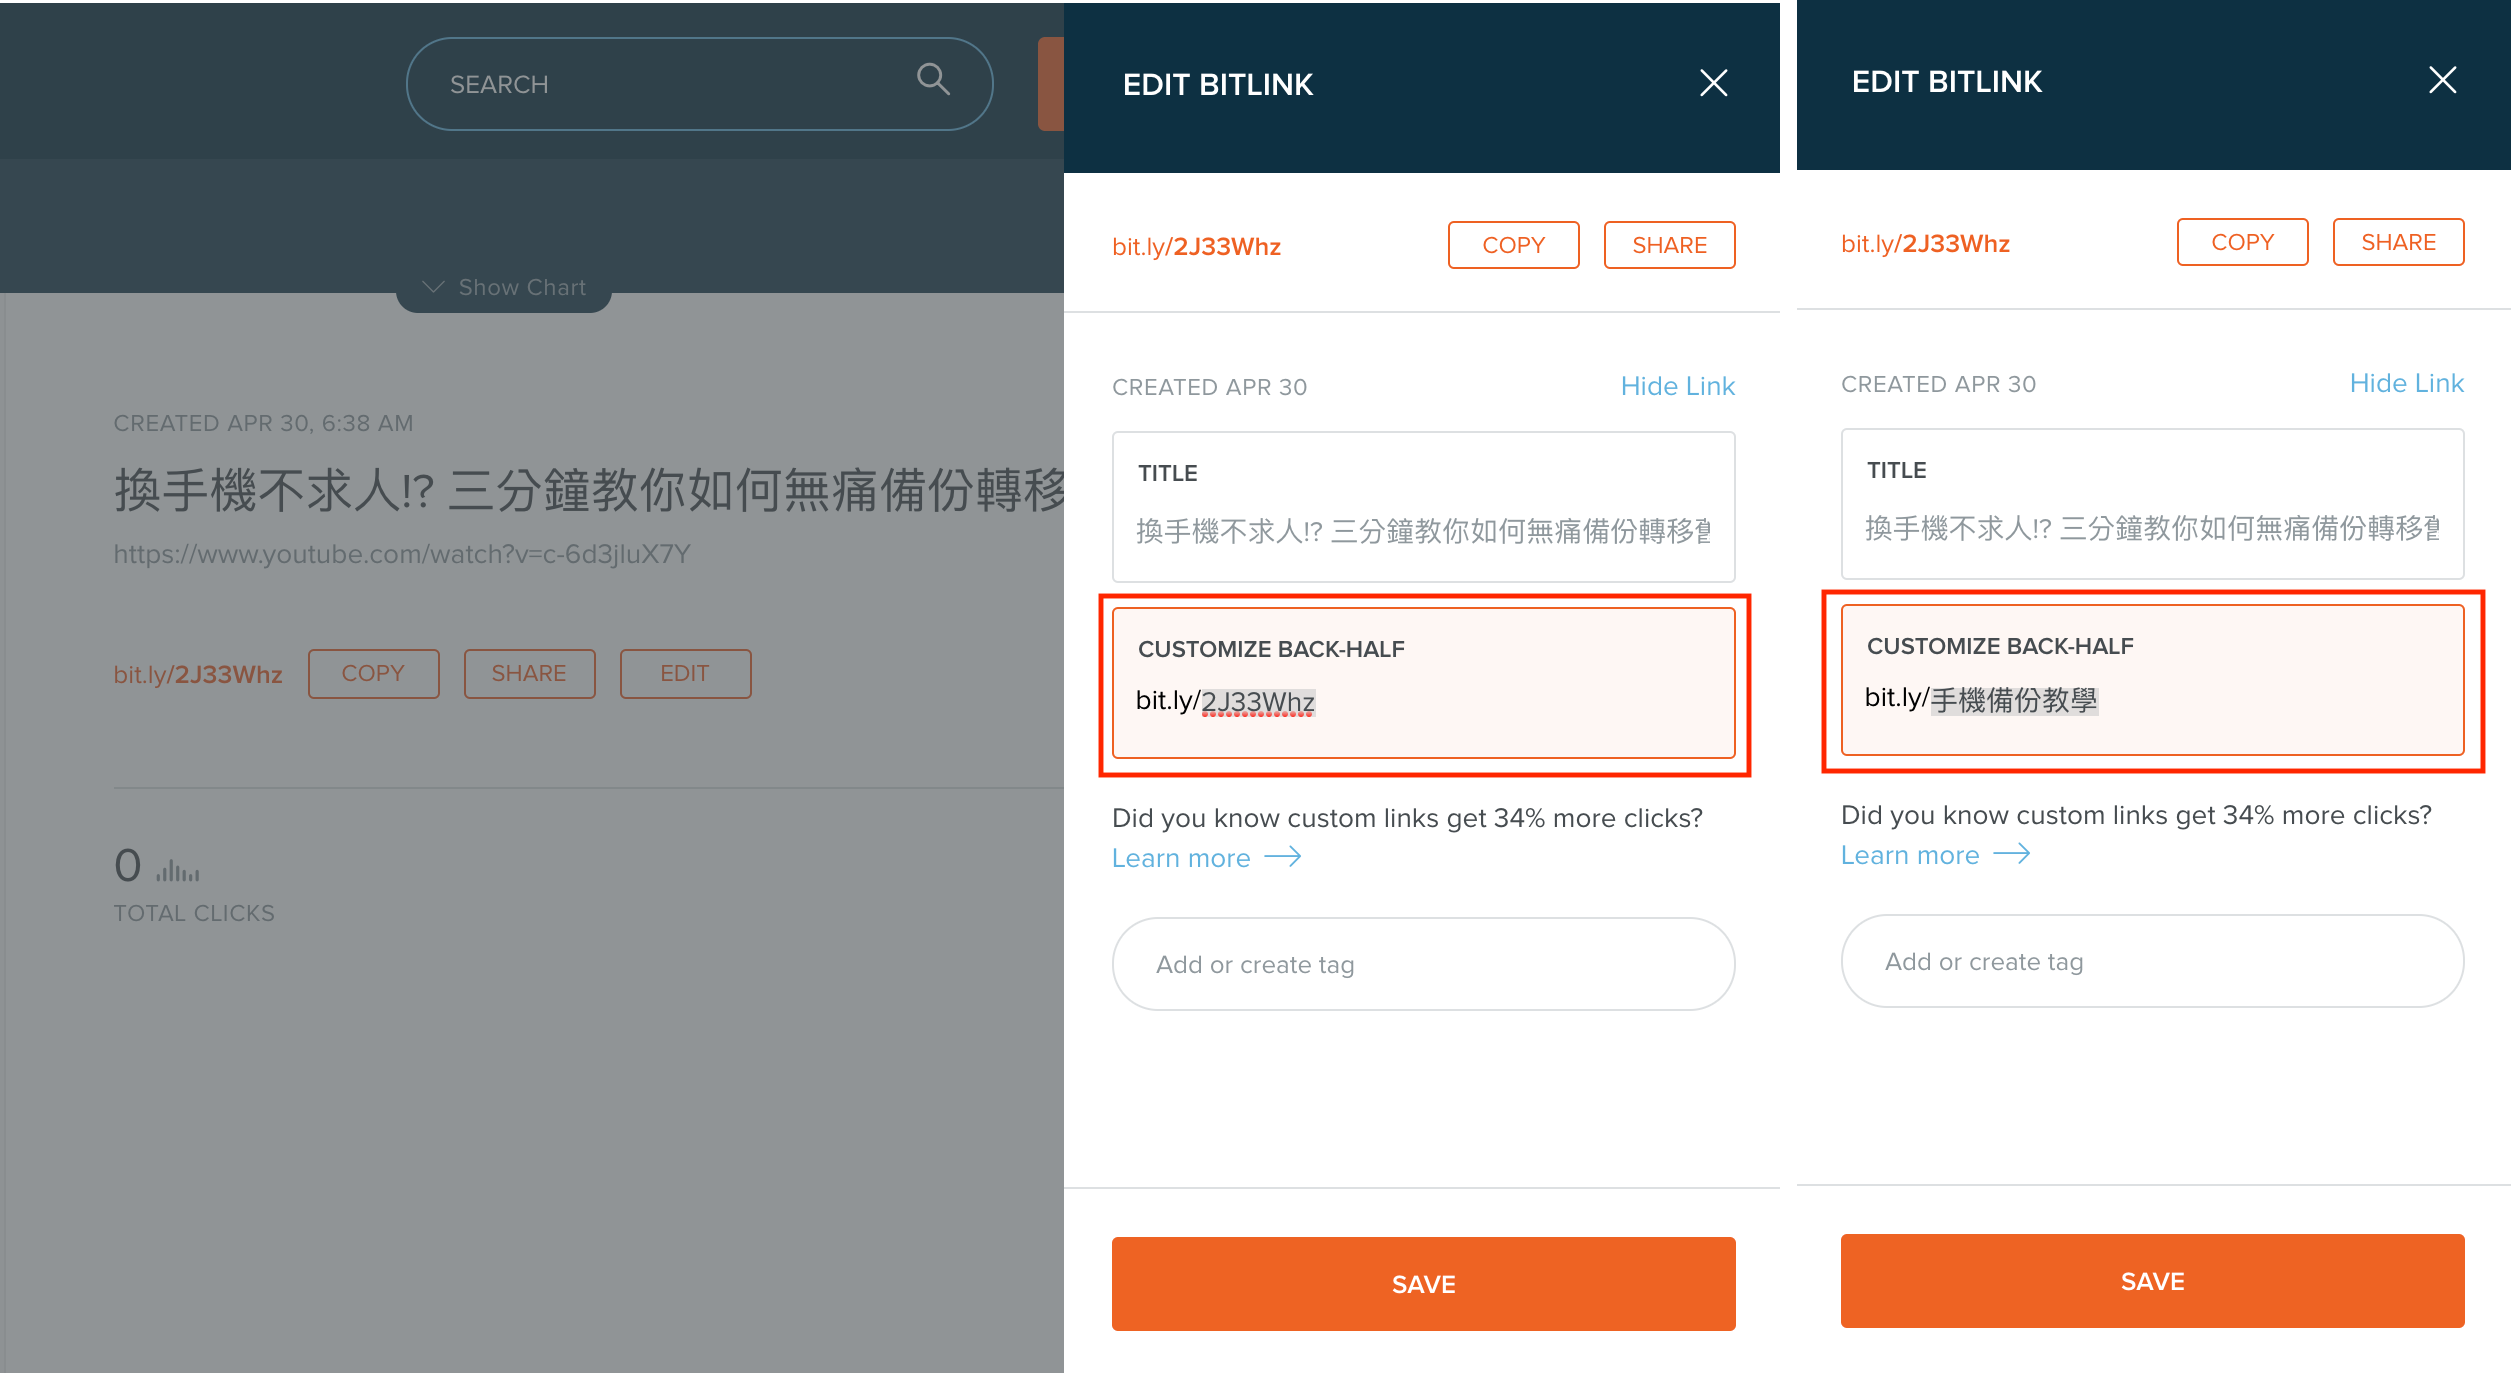 精選 5 個取代 goo.gl 的短網址服務推薦，支援自訂中文網址、行銷應用